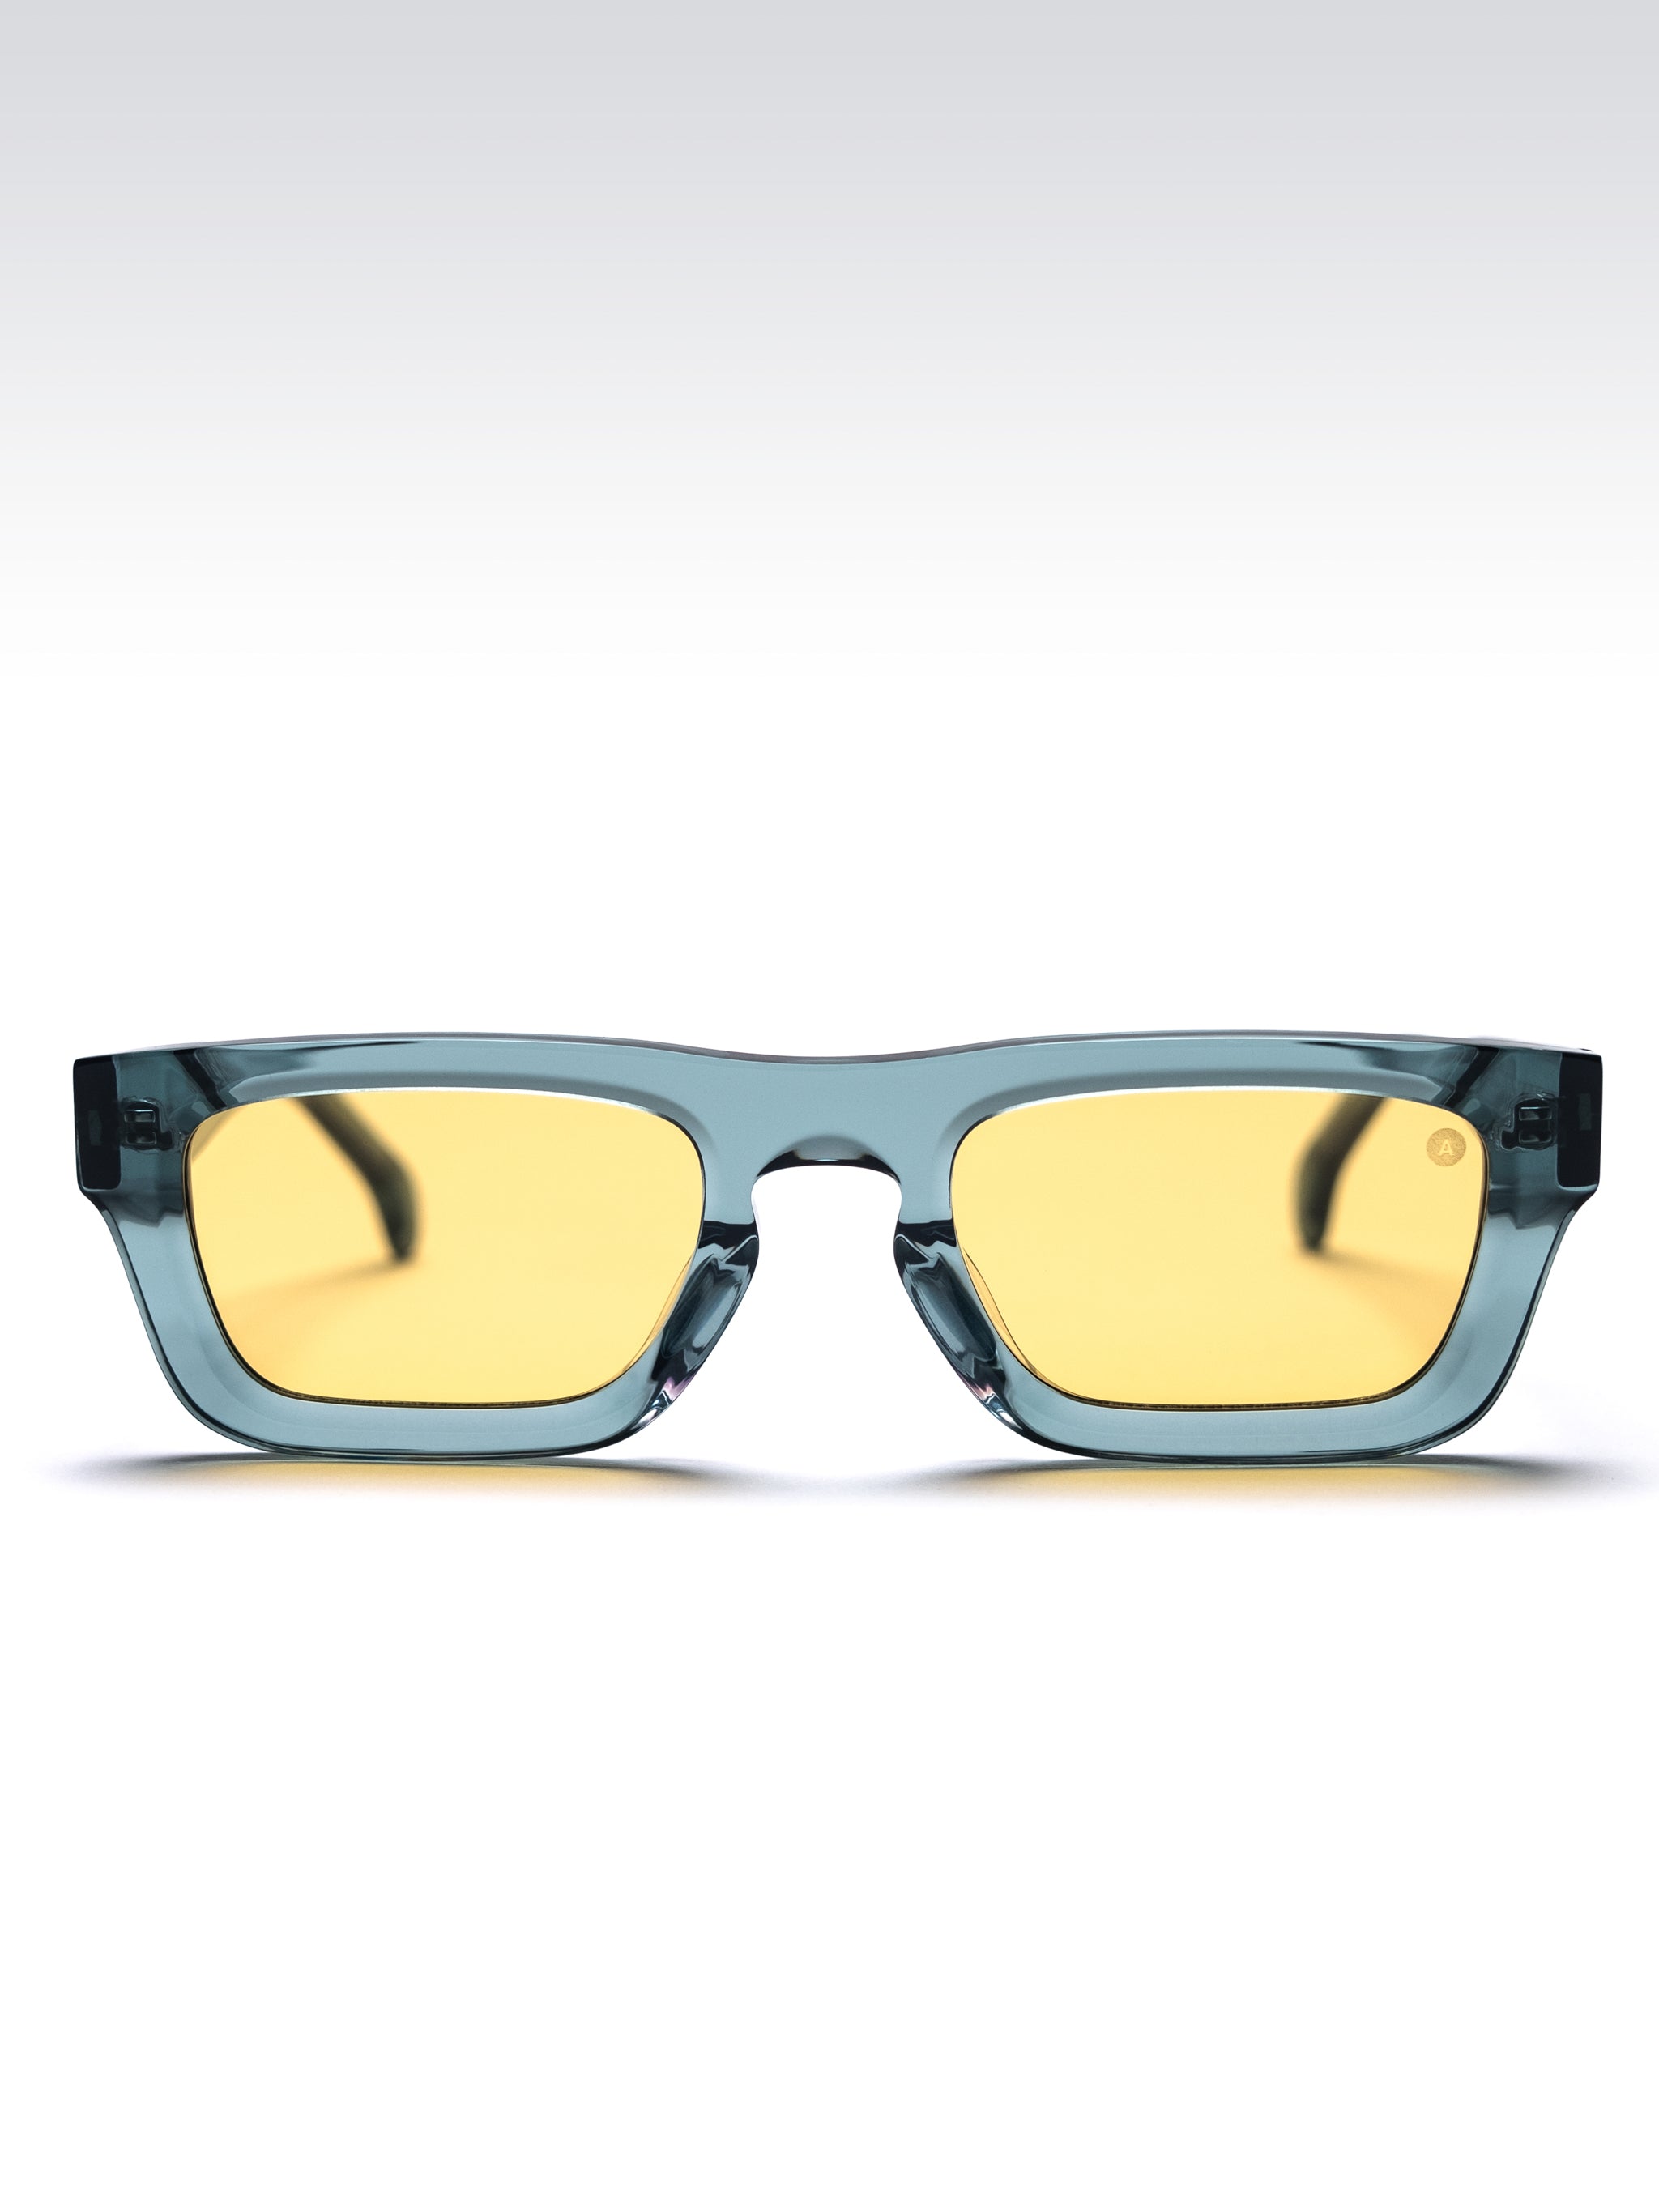 Square Sunglasses - Amazon